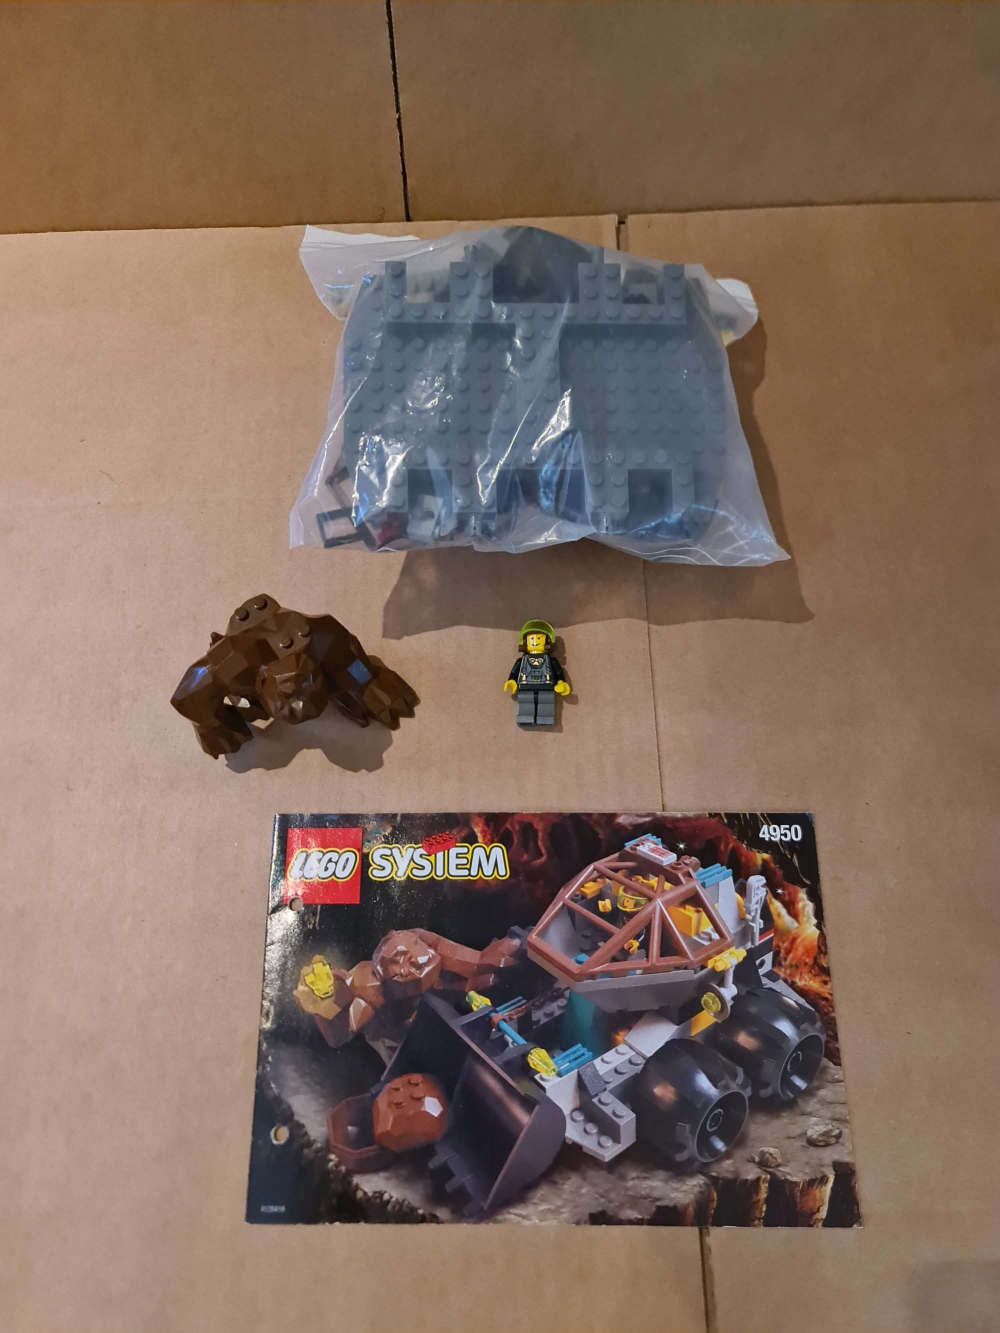 Sett 4950 fra Lego Rock Raiders serien.
Flott komplett sett med manual.